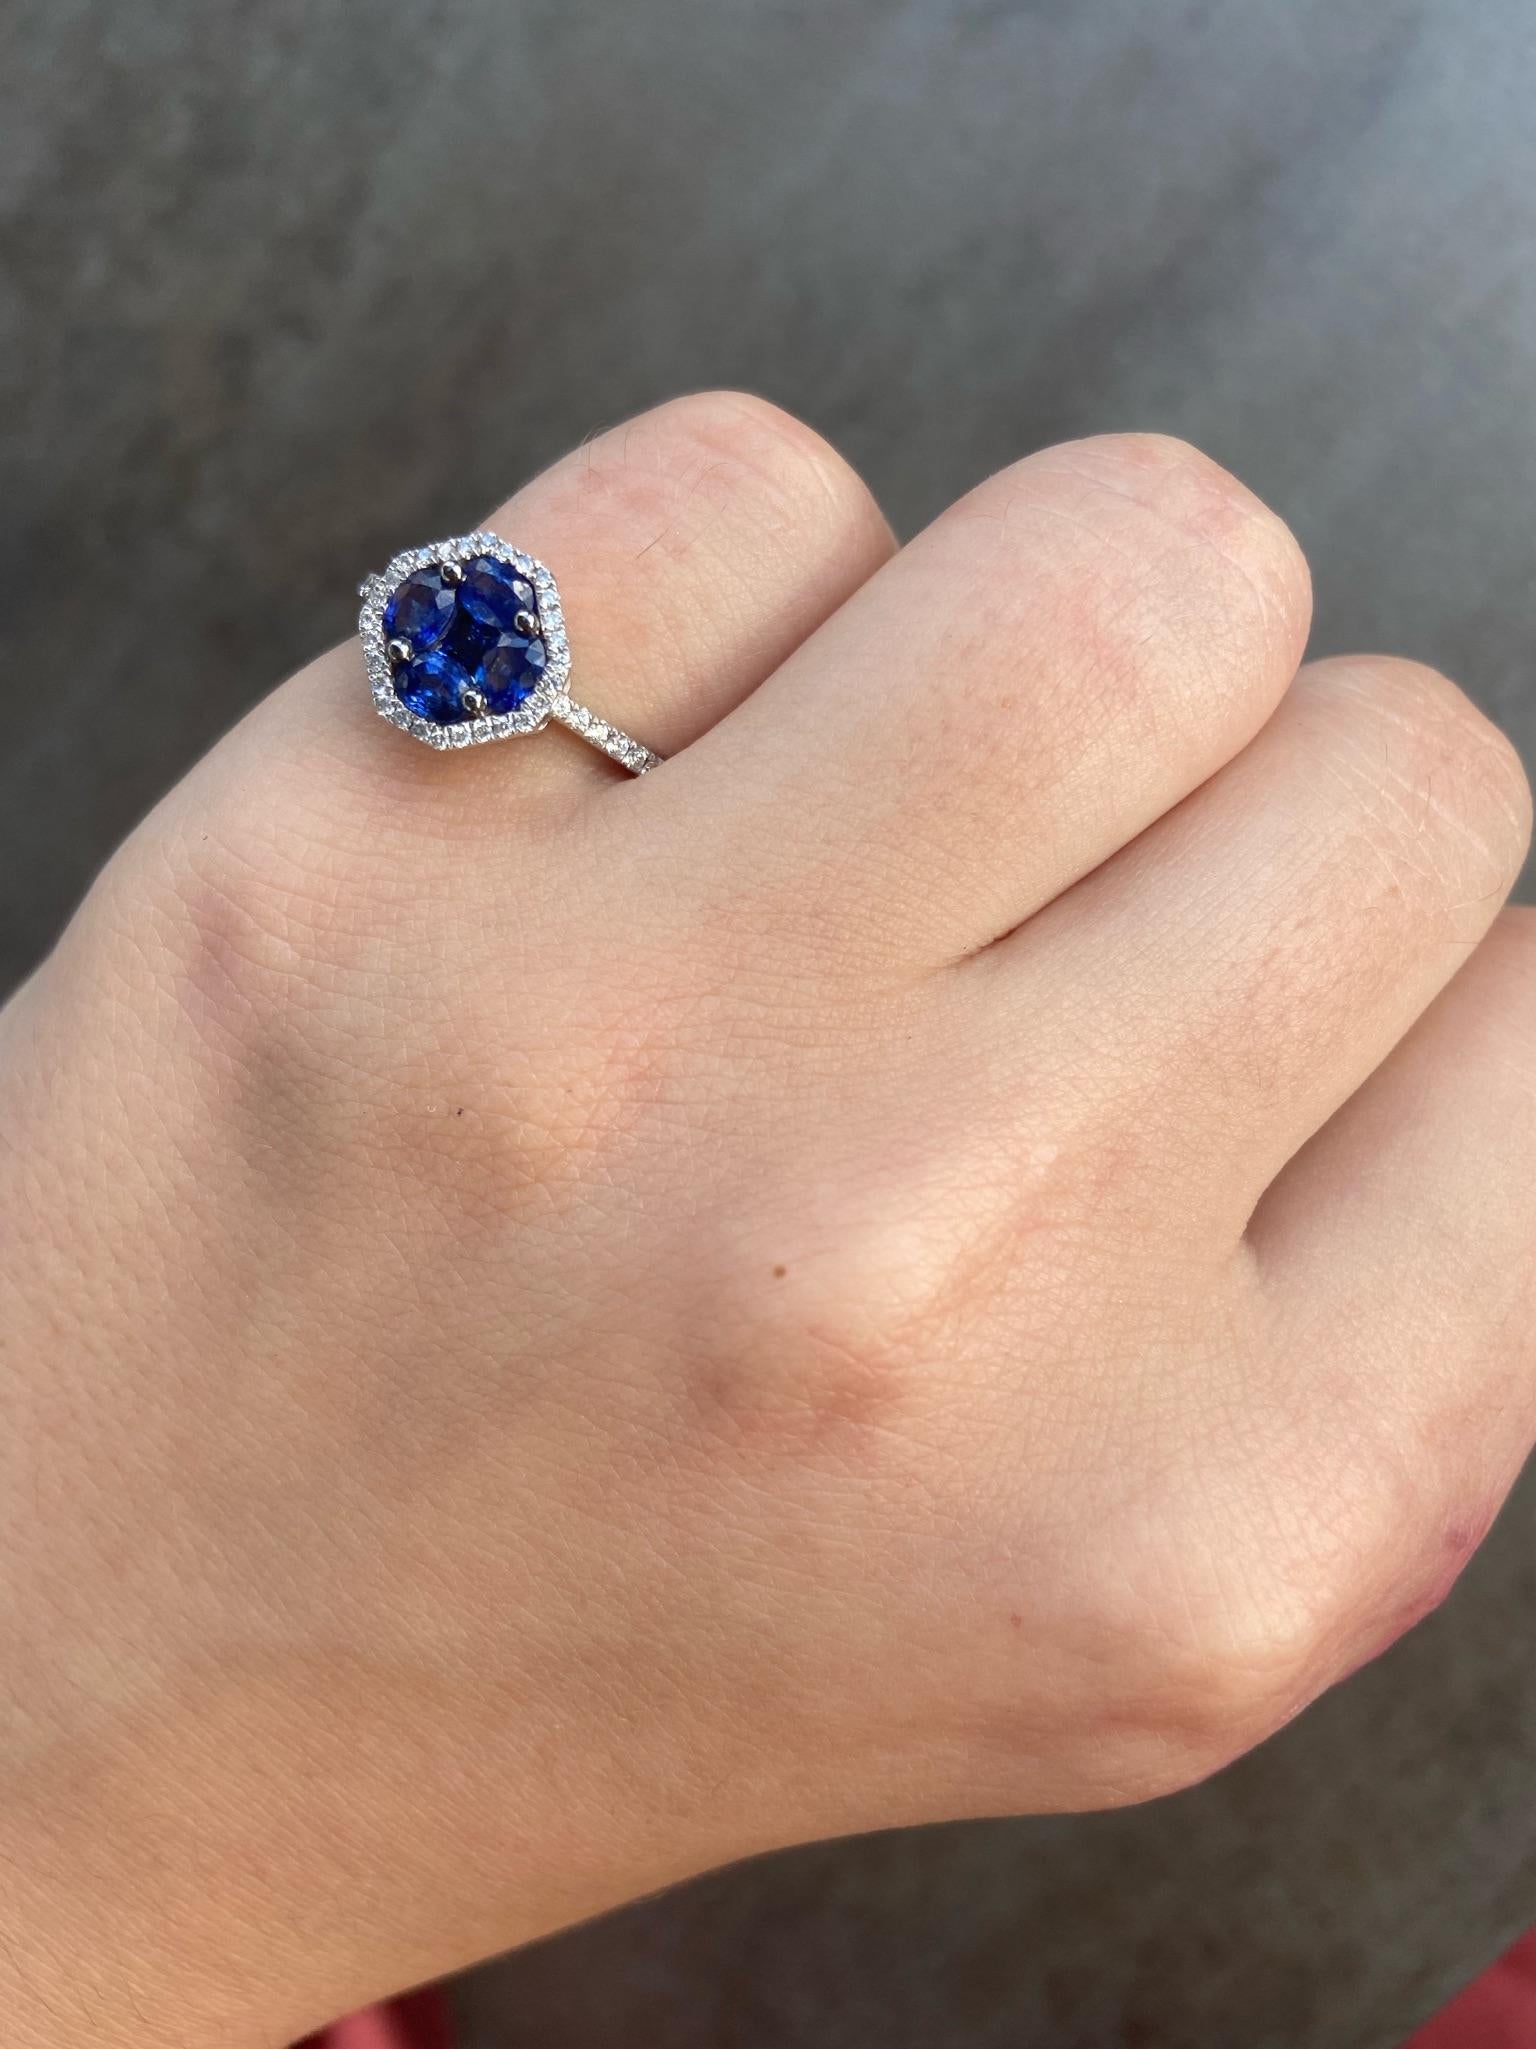 For Sale:  Elegant Blue Sapphire White Diamond White Gold Ring for Her 6